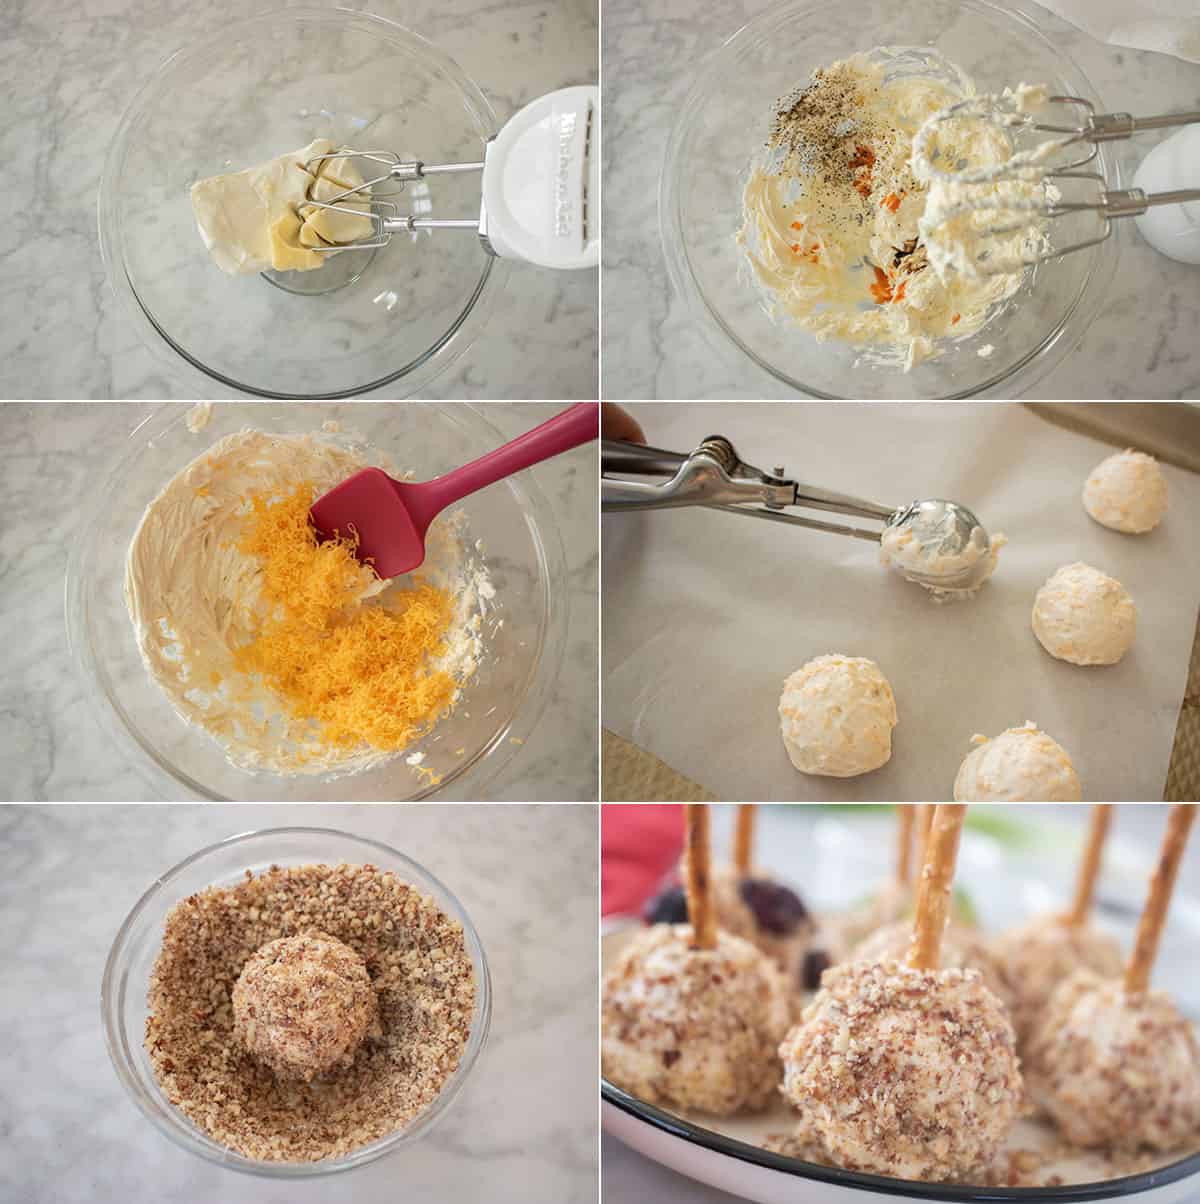 Process of making mini cheese balls.